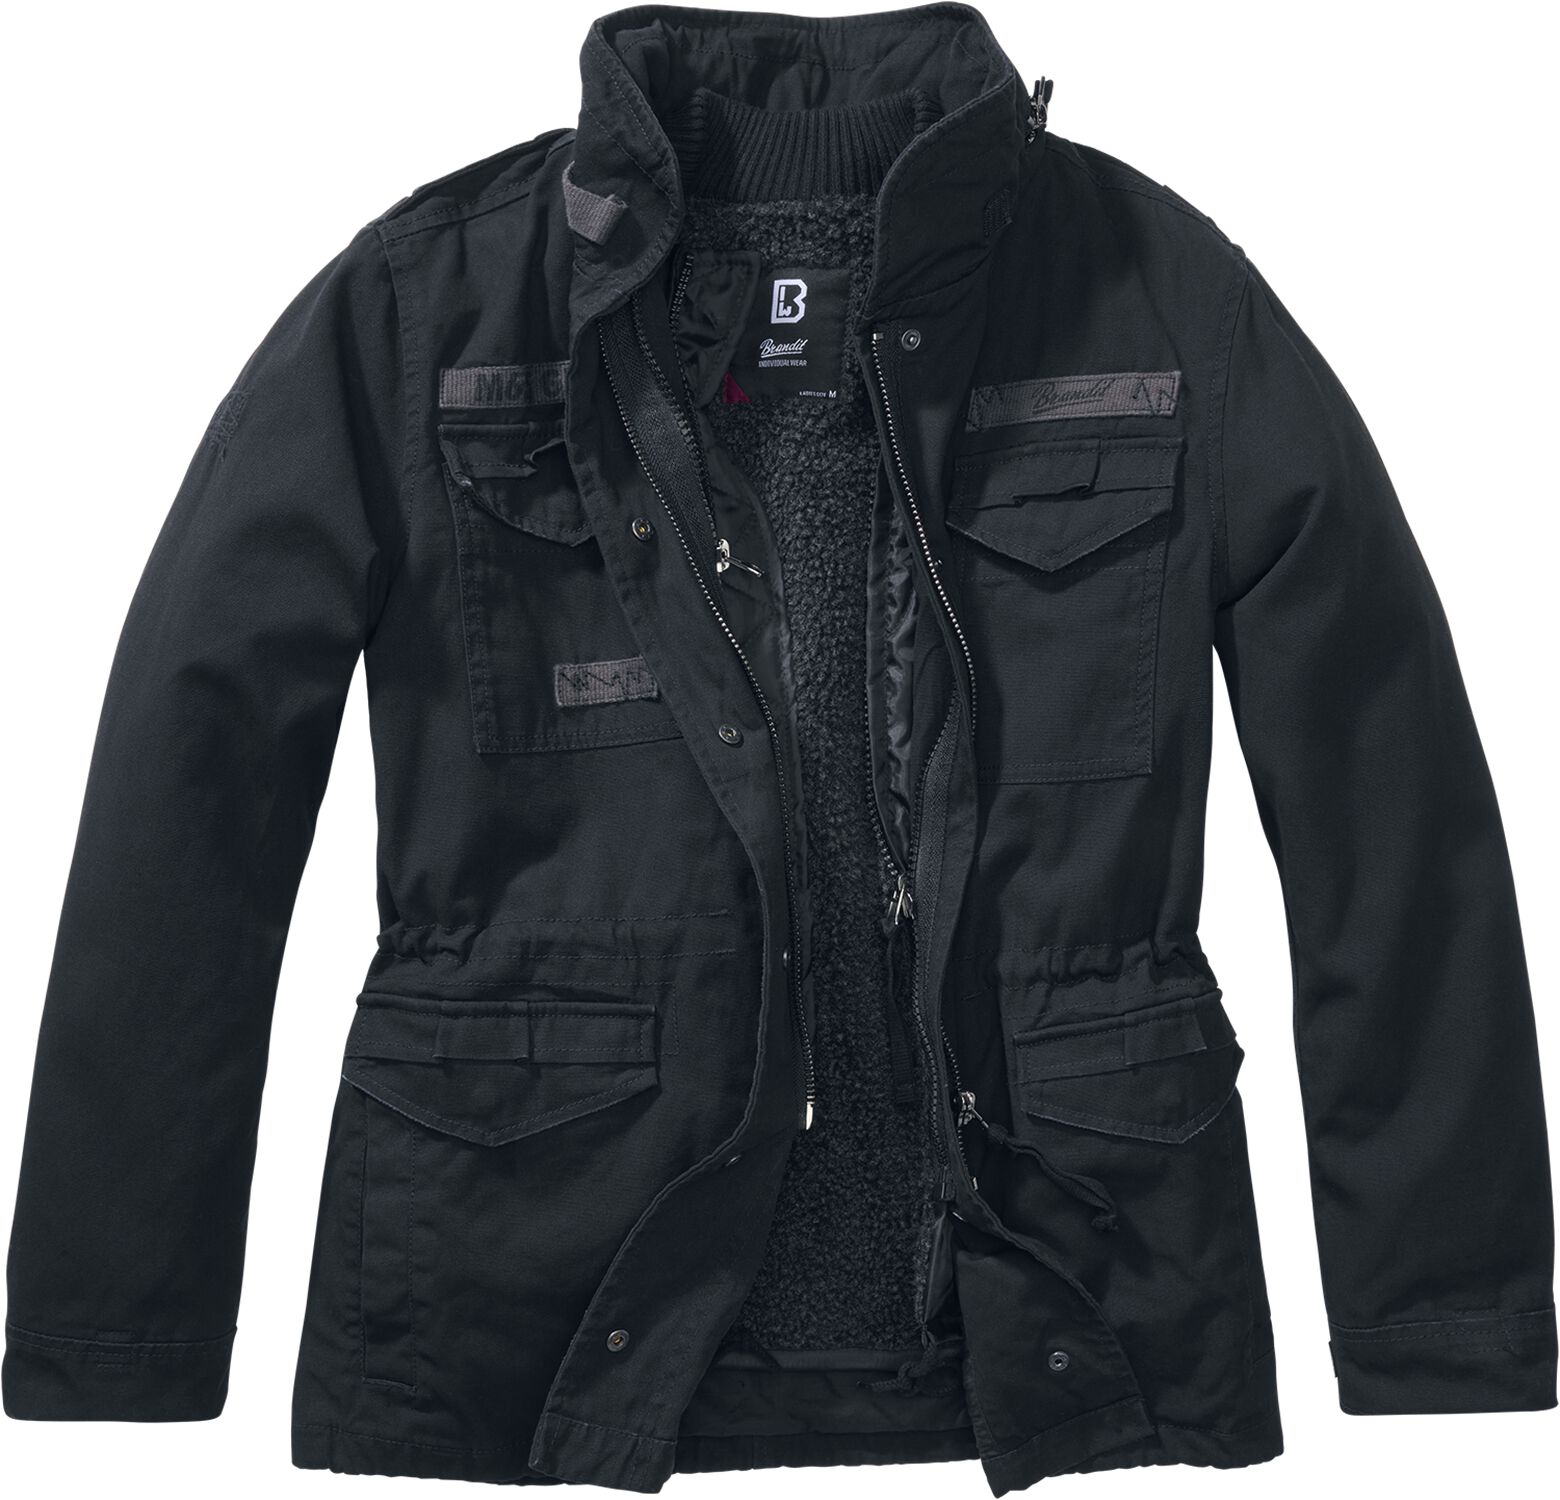 Brandit Winterjacke - Ladies M65 Giant Jacket - XS bis 5XL - für Damen - Größe 5XL - schwarz